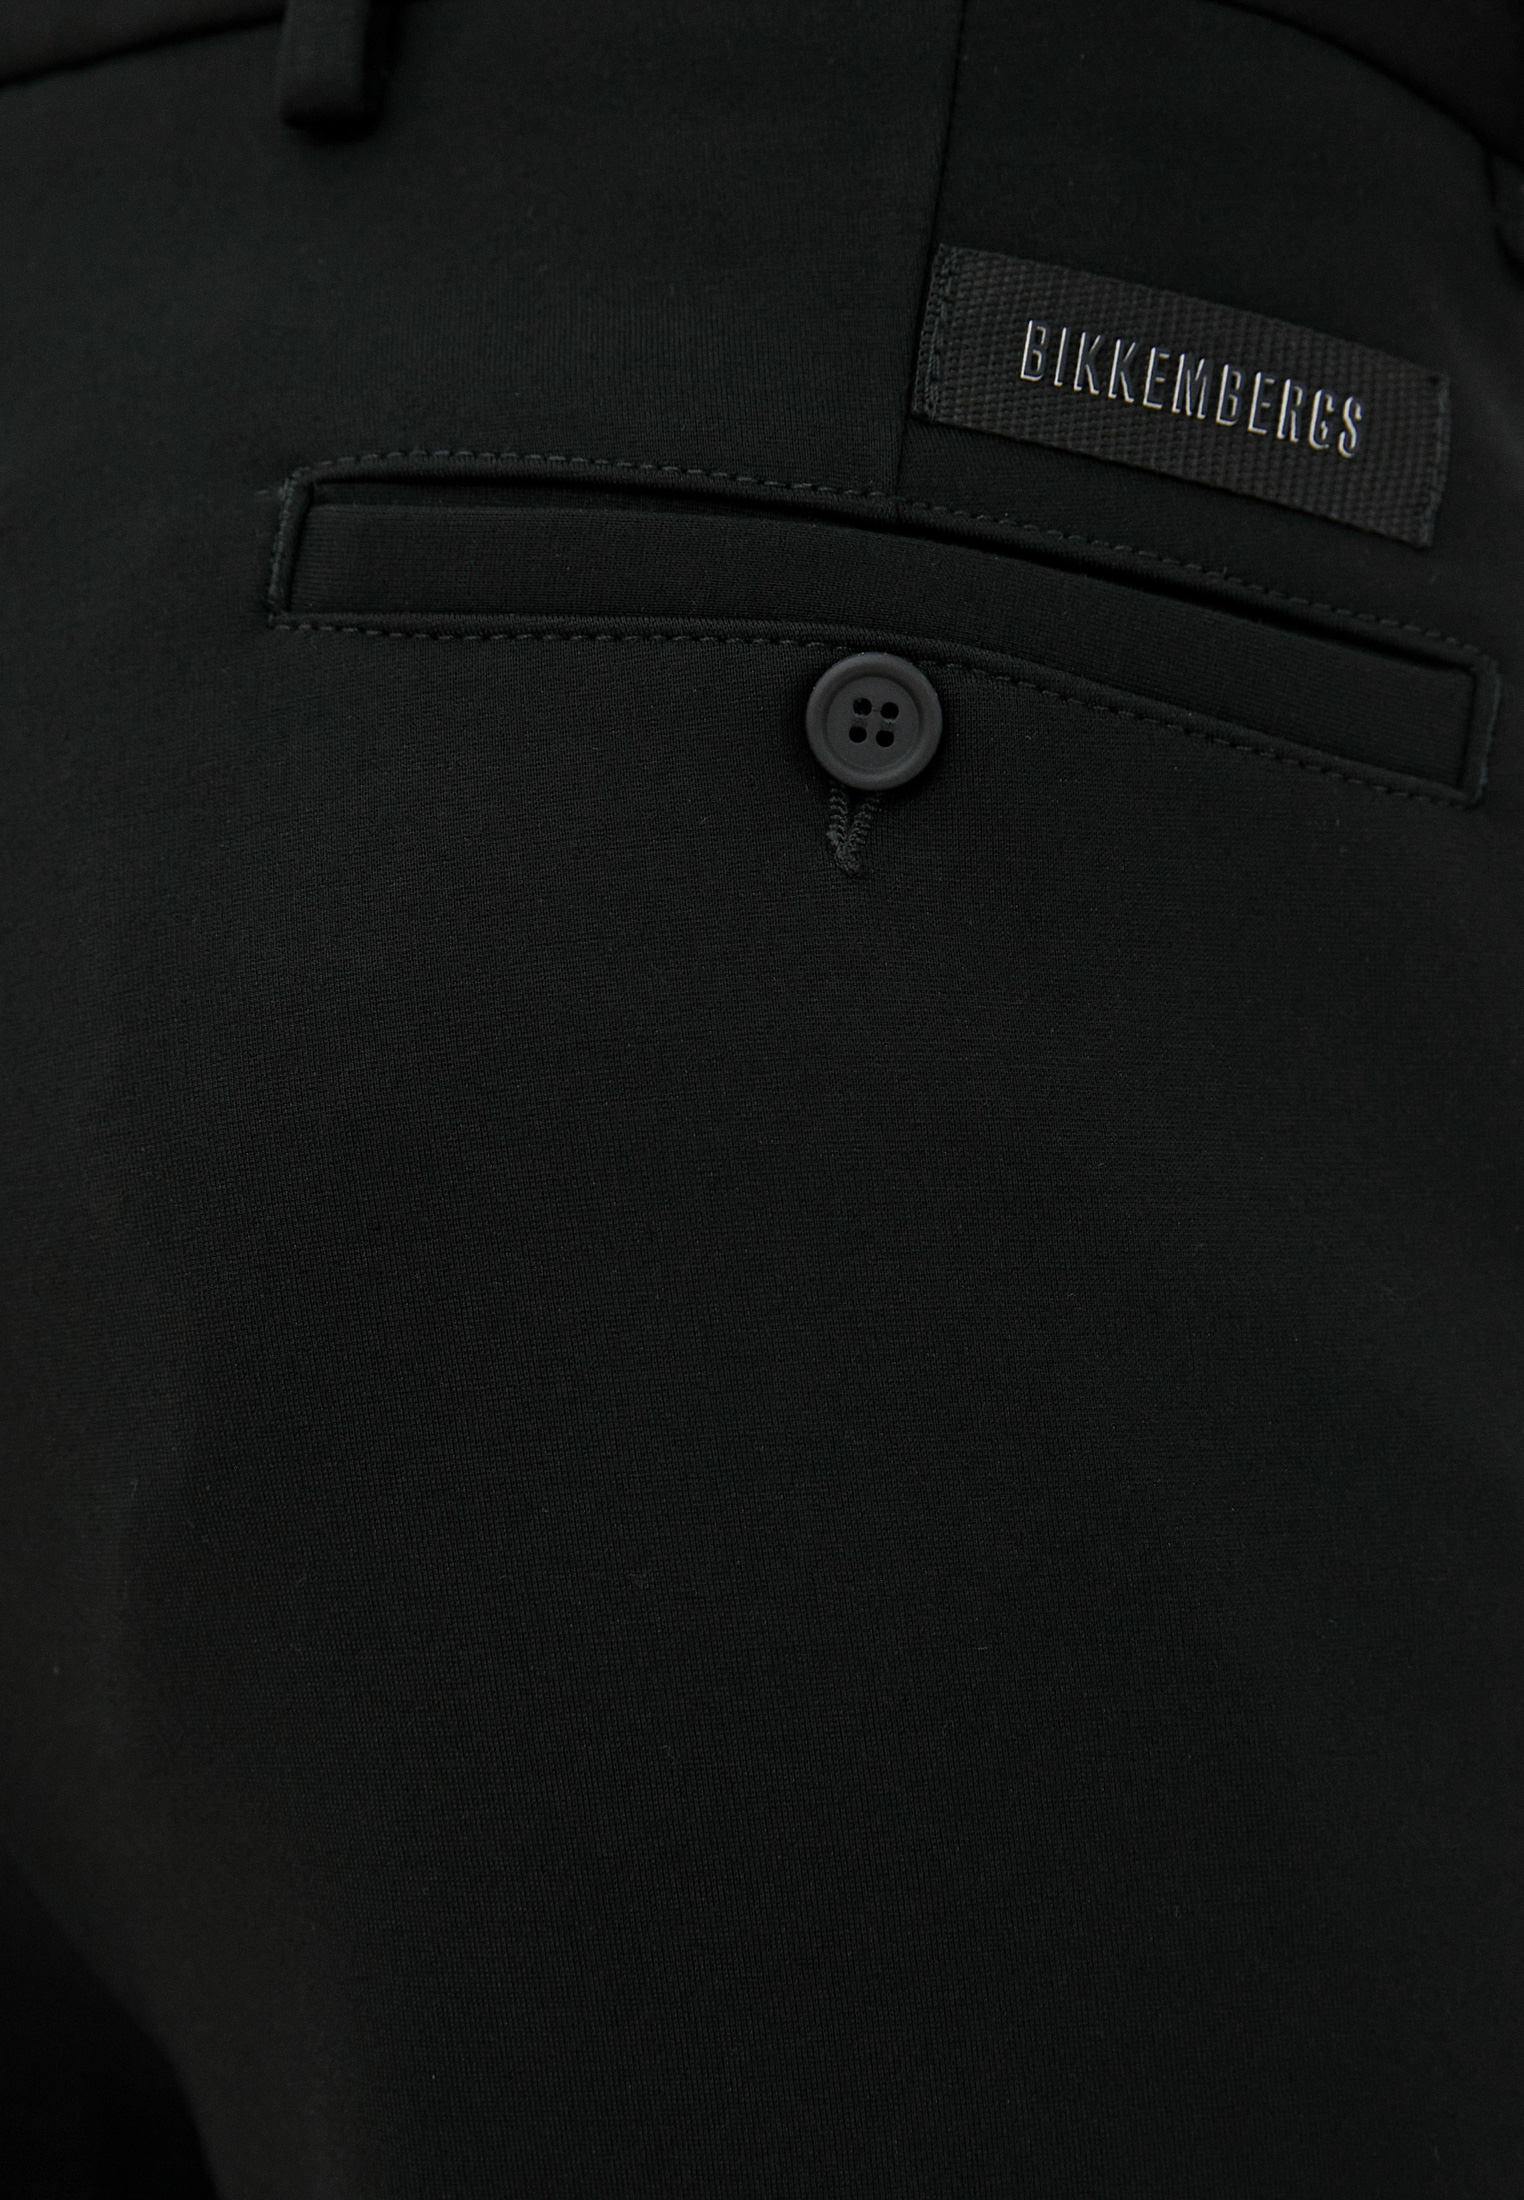 Мужские повседневные брюки Bikkembergs (Биккембергс) C 1 150 80 E 2190: изображение 10